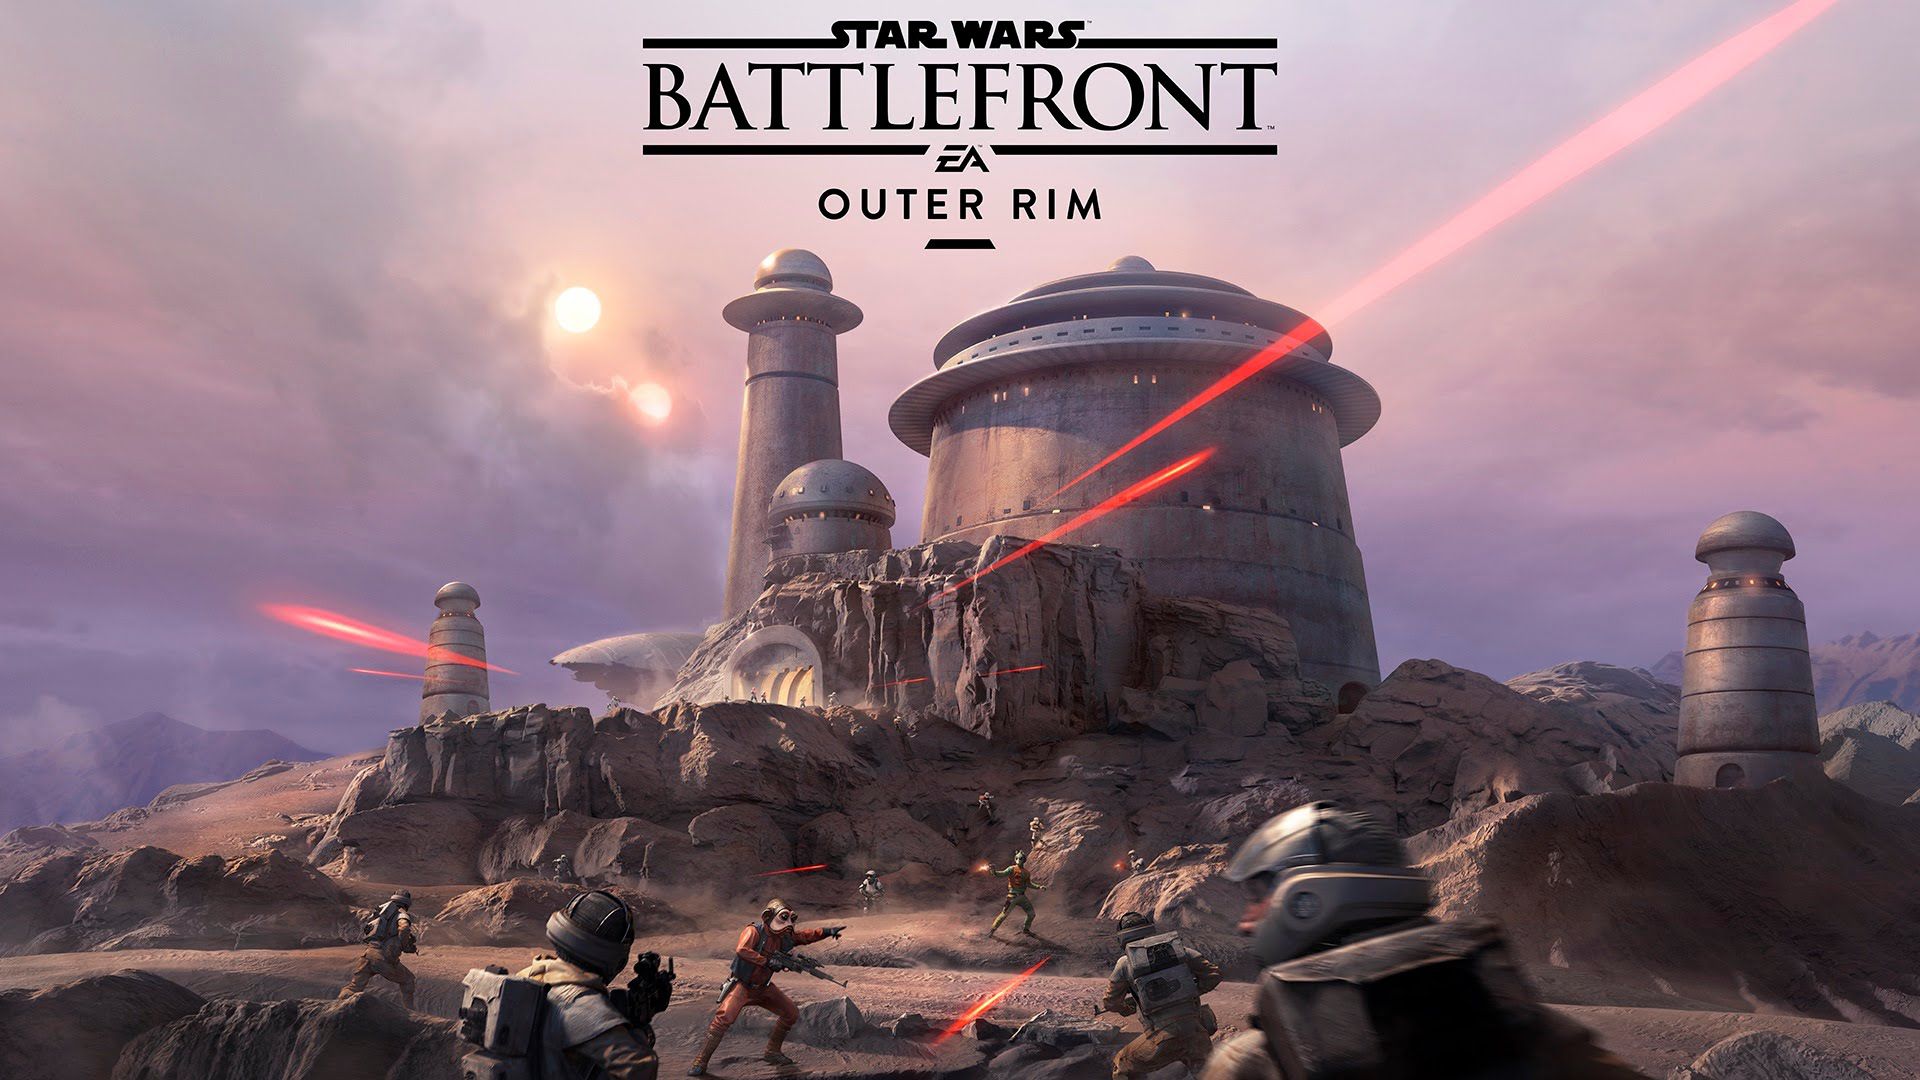 Star Wars Battlefront Outer Rim